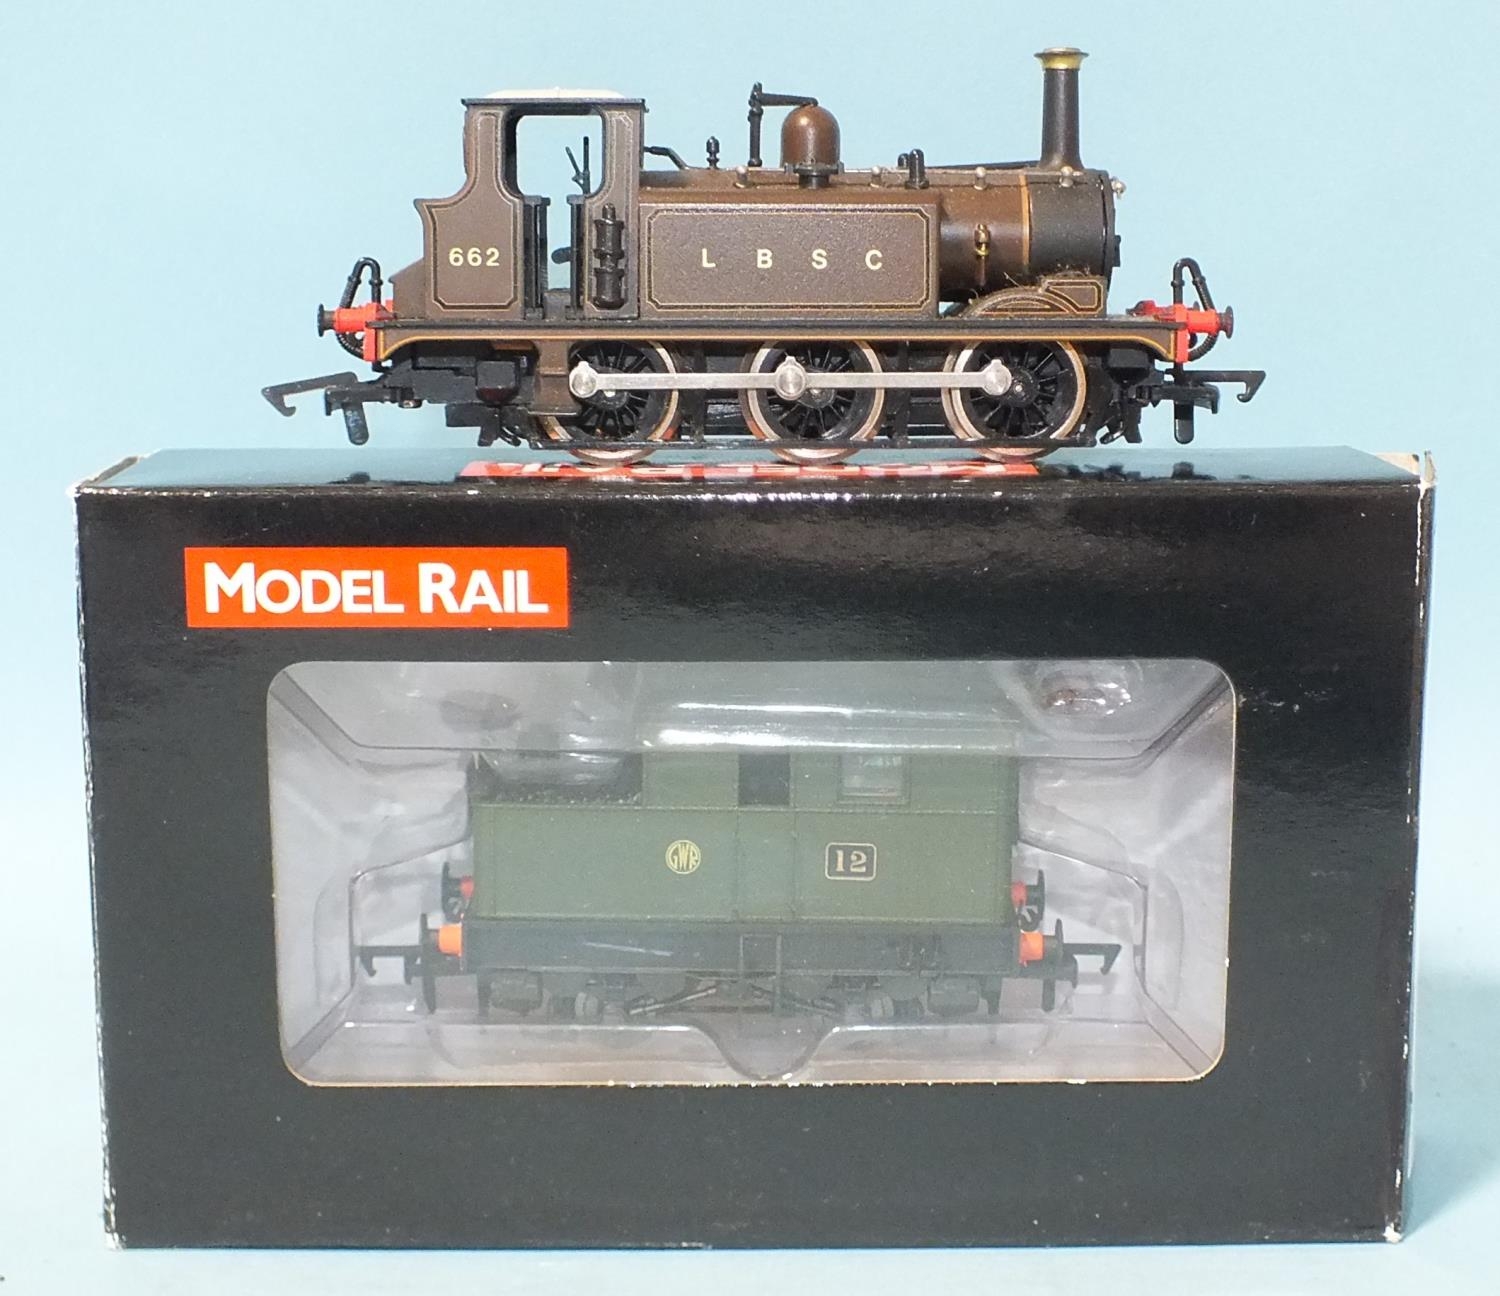 Model Rail (by Dapol) OO gauge, MR-012 S...